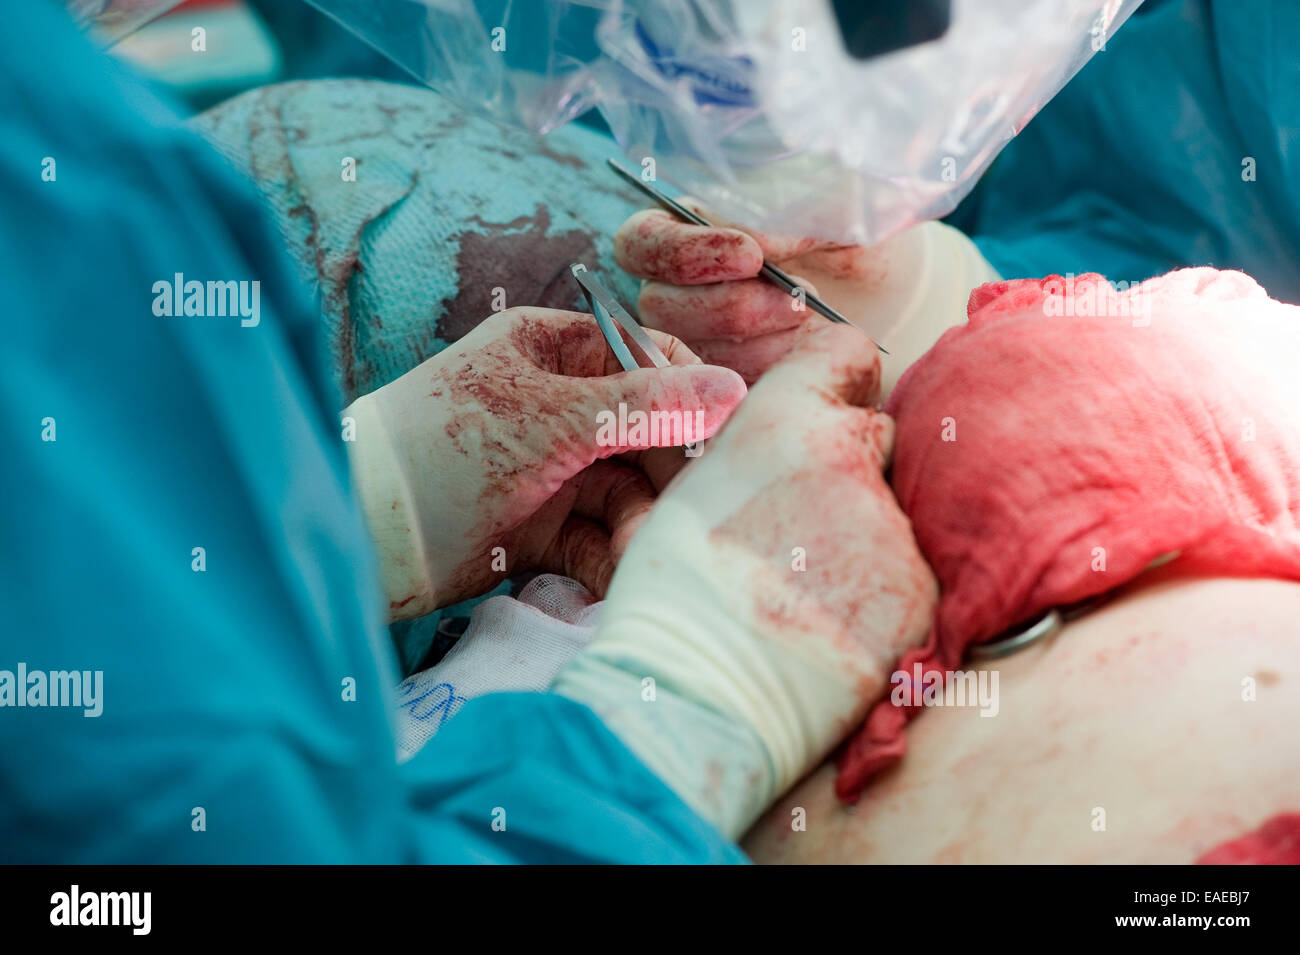 Deux chirurgiens travaillant précisément ensemble durant une opération dans un hôpital Banque D'Images